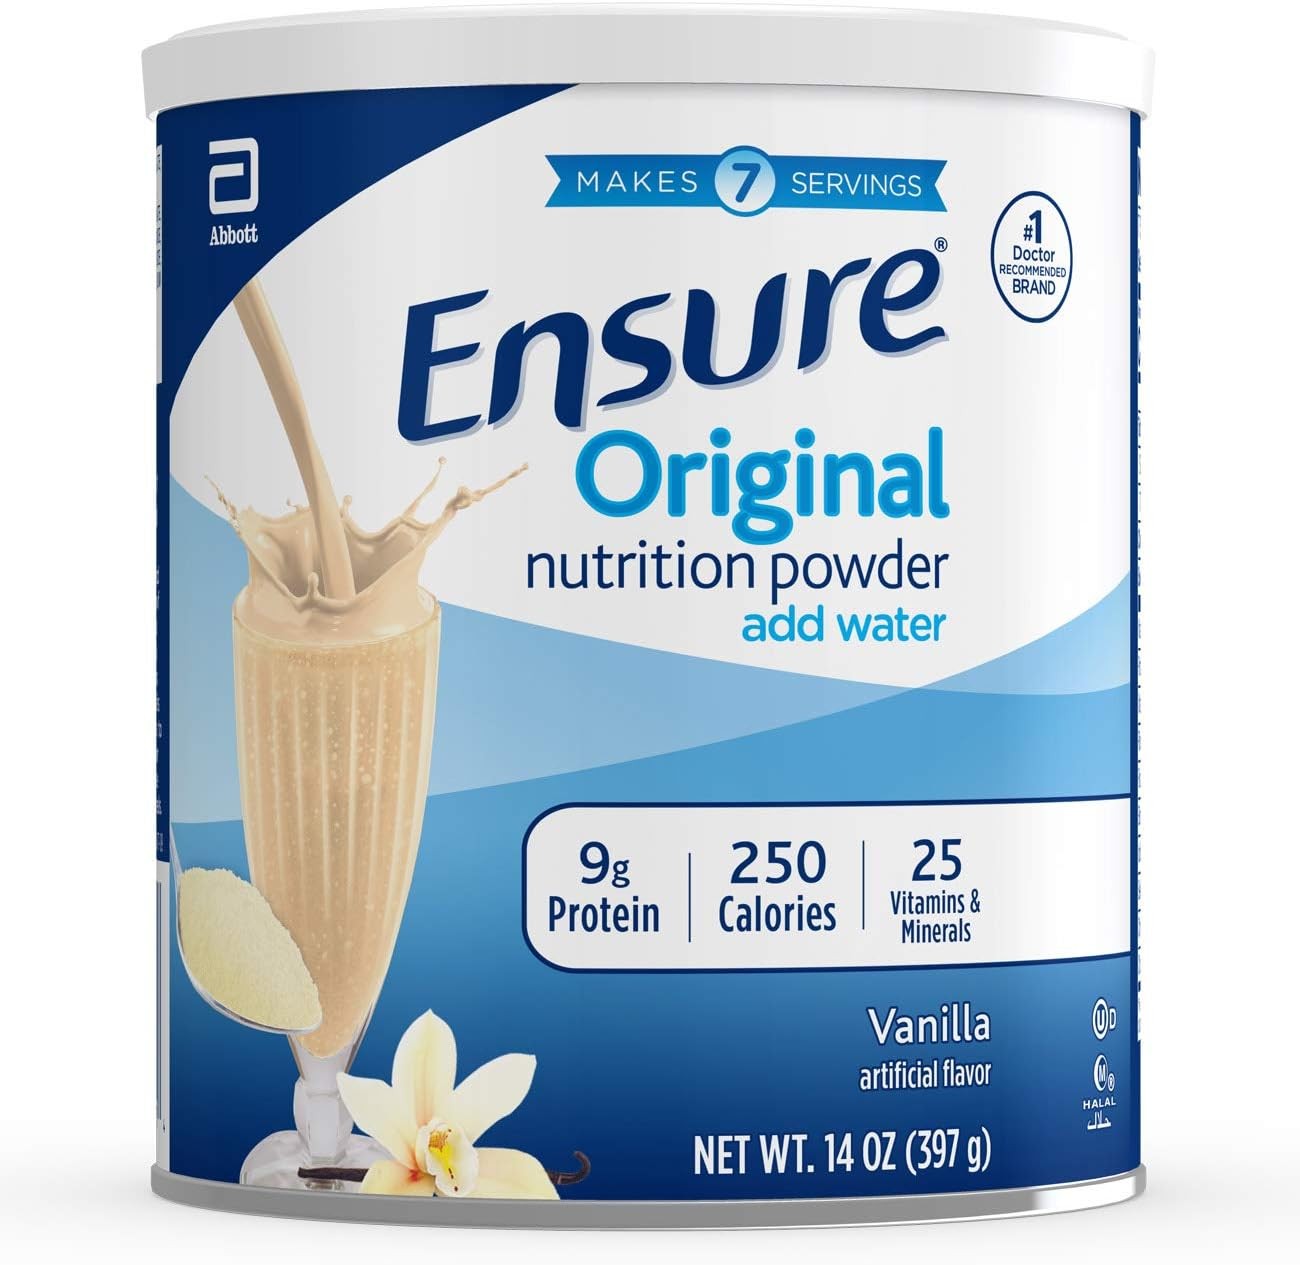 Ensure Original Nutrition Powder, (Vanilla) 14oz